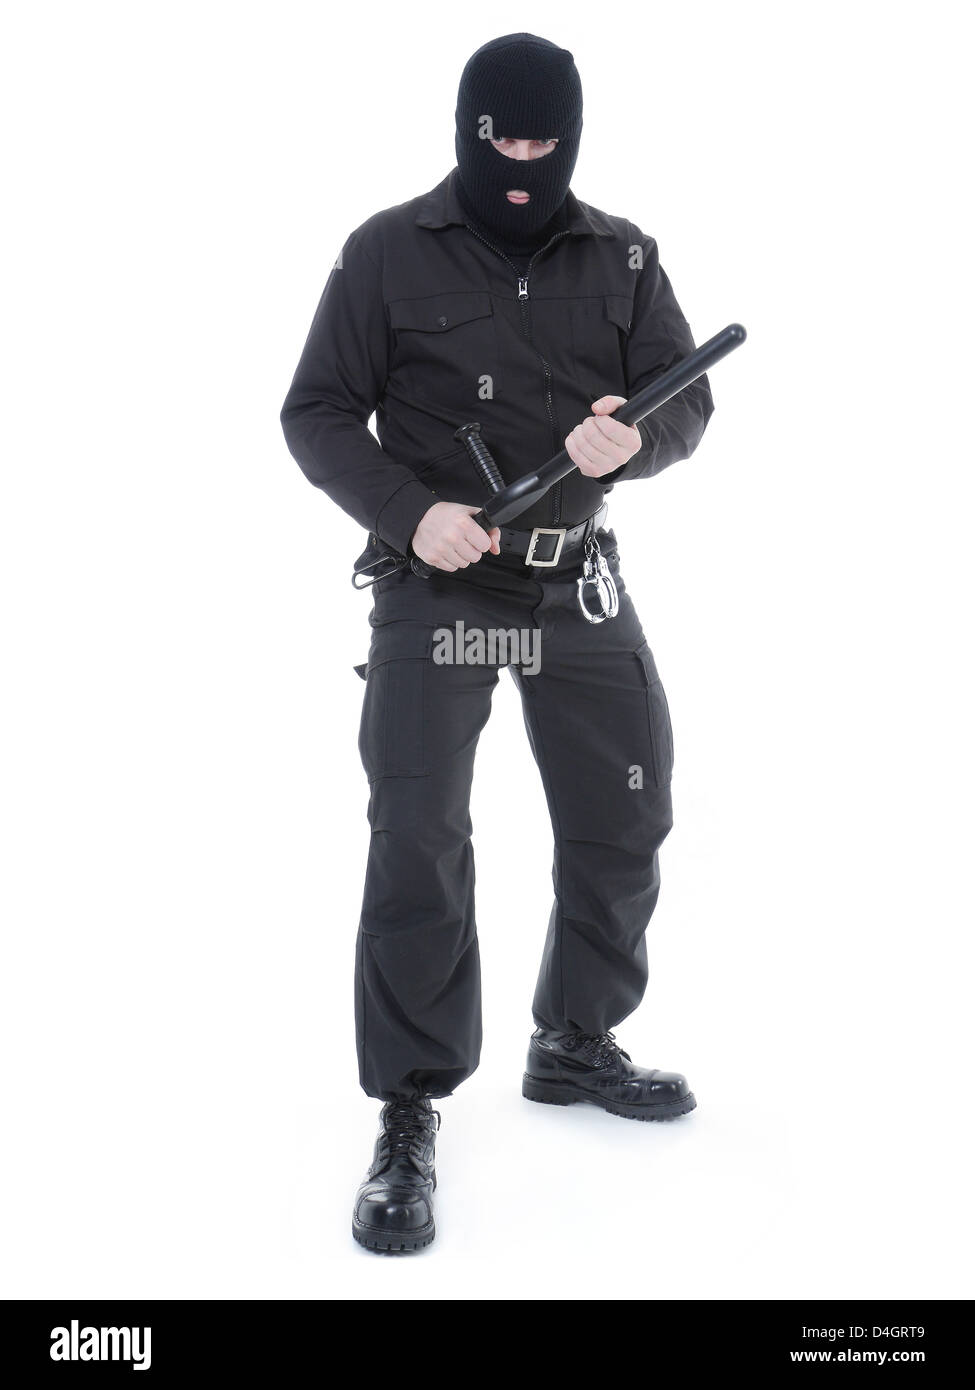 La policía antiterrorista guy vistiendo uniforme negro y máscara negra sujetando firmemente el club policial en ambas manos, listo para la acción Foto de stock